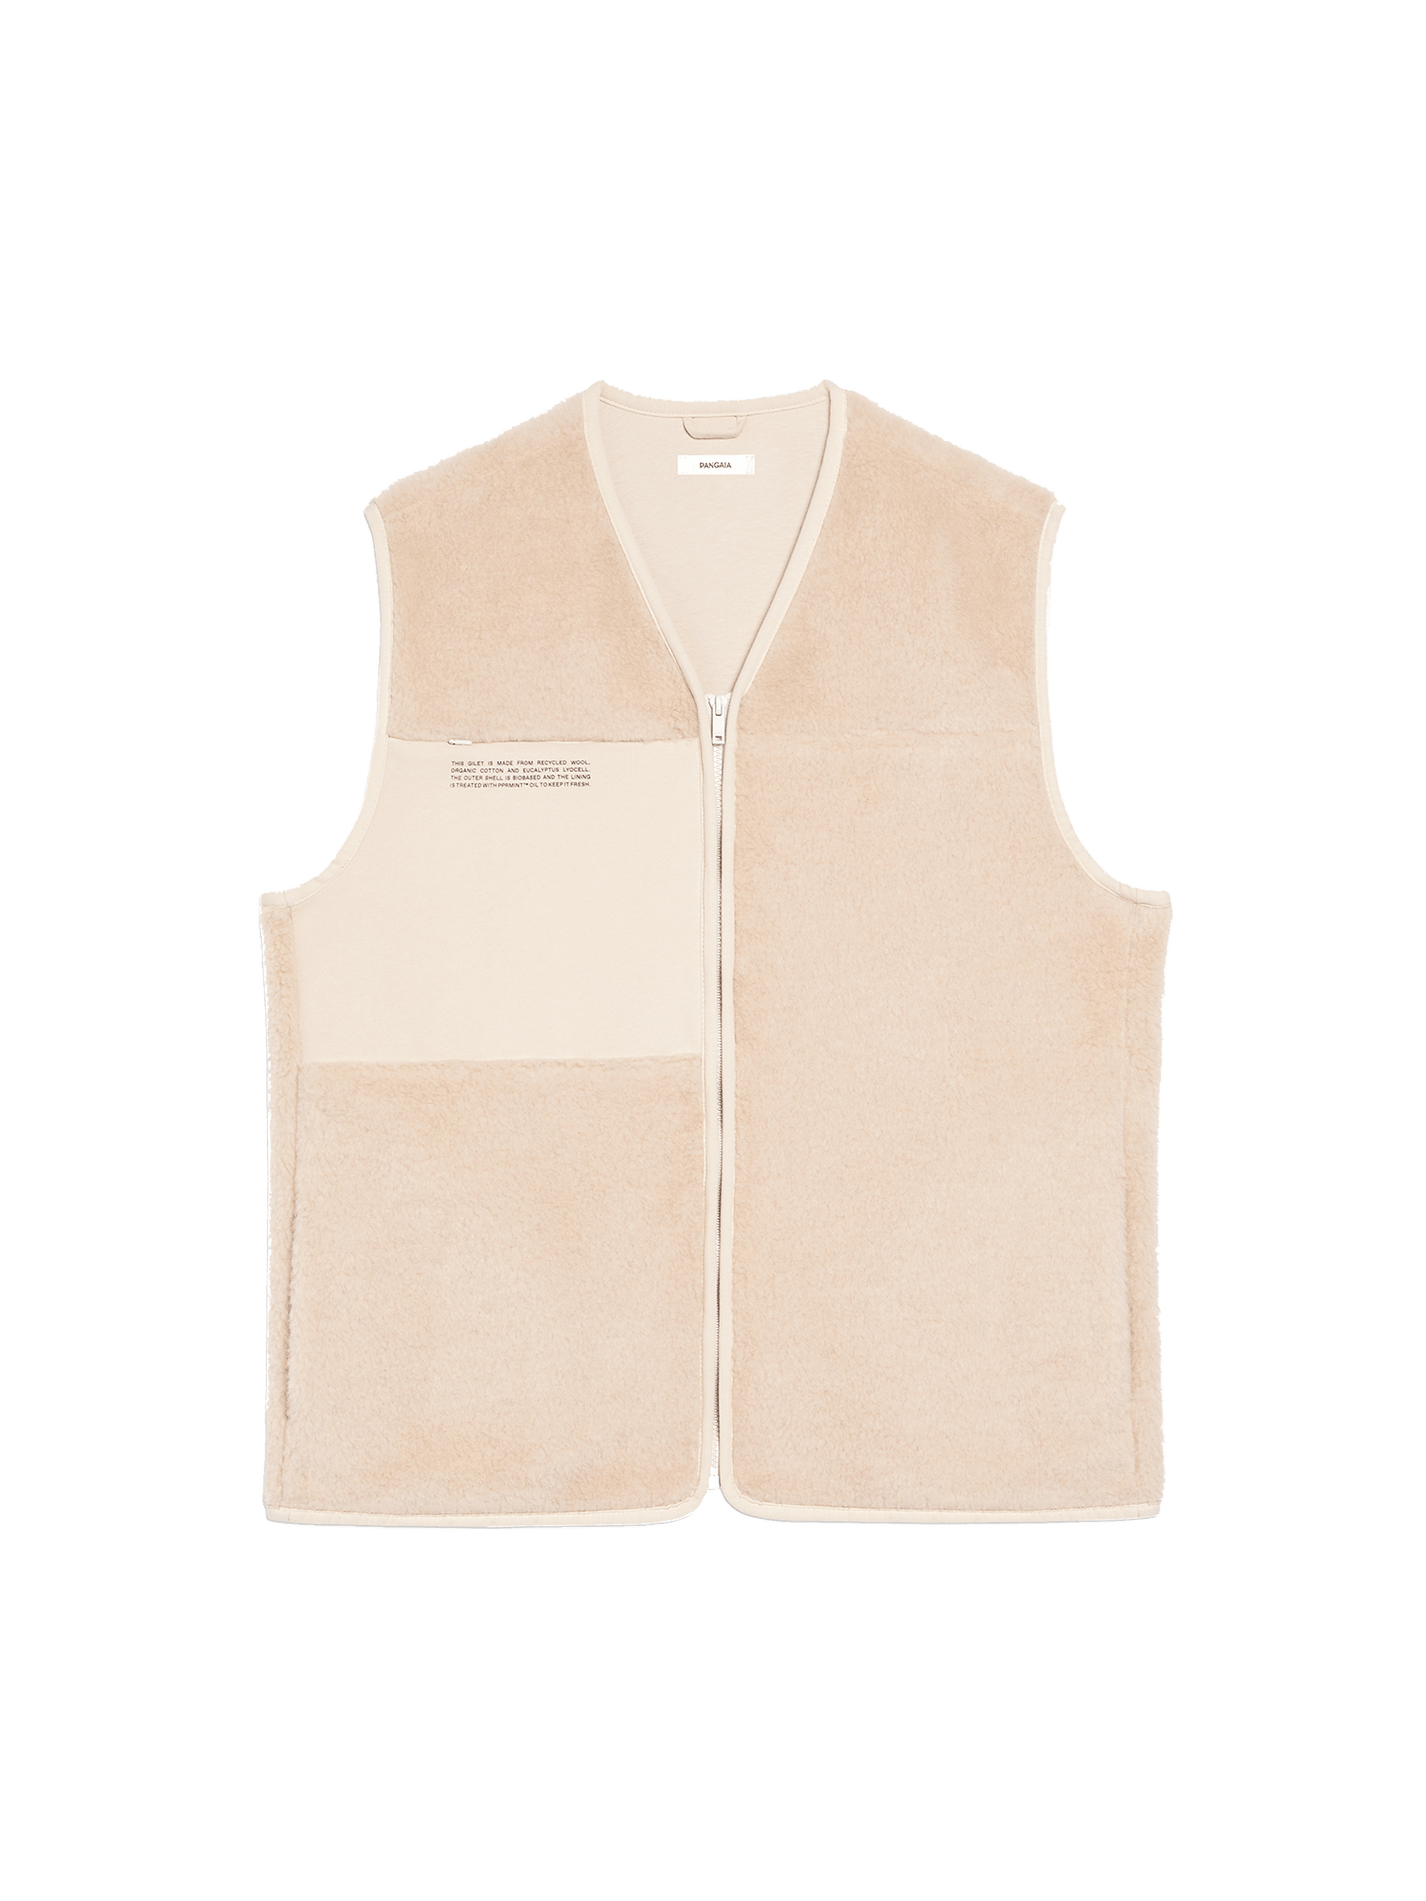 Recycled Wool Fleece Gilet - Sand - Pangaia